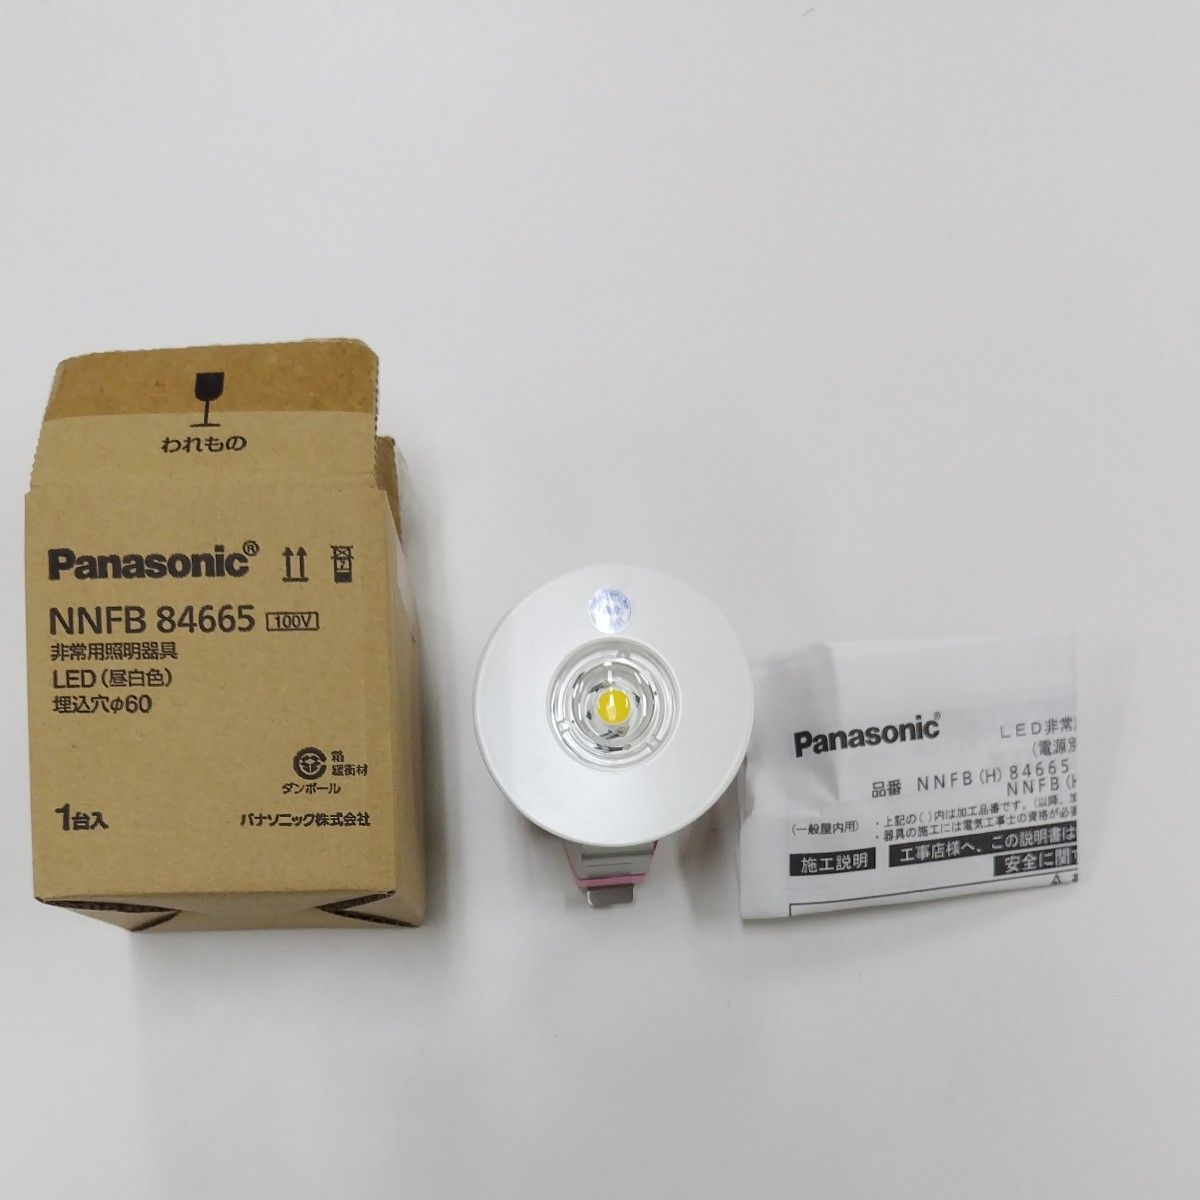 Panasonic非常用照明器具LED昼白色NNFB84665 